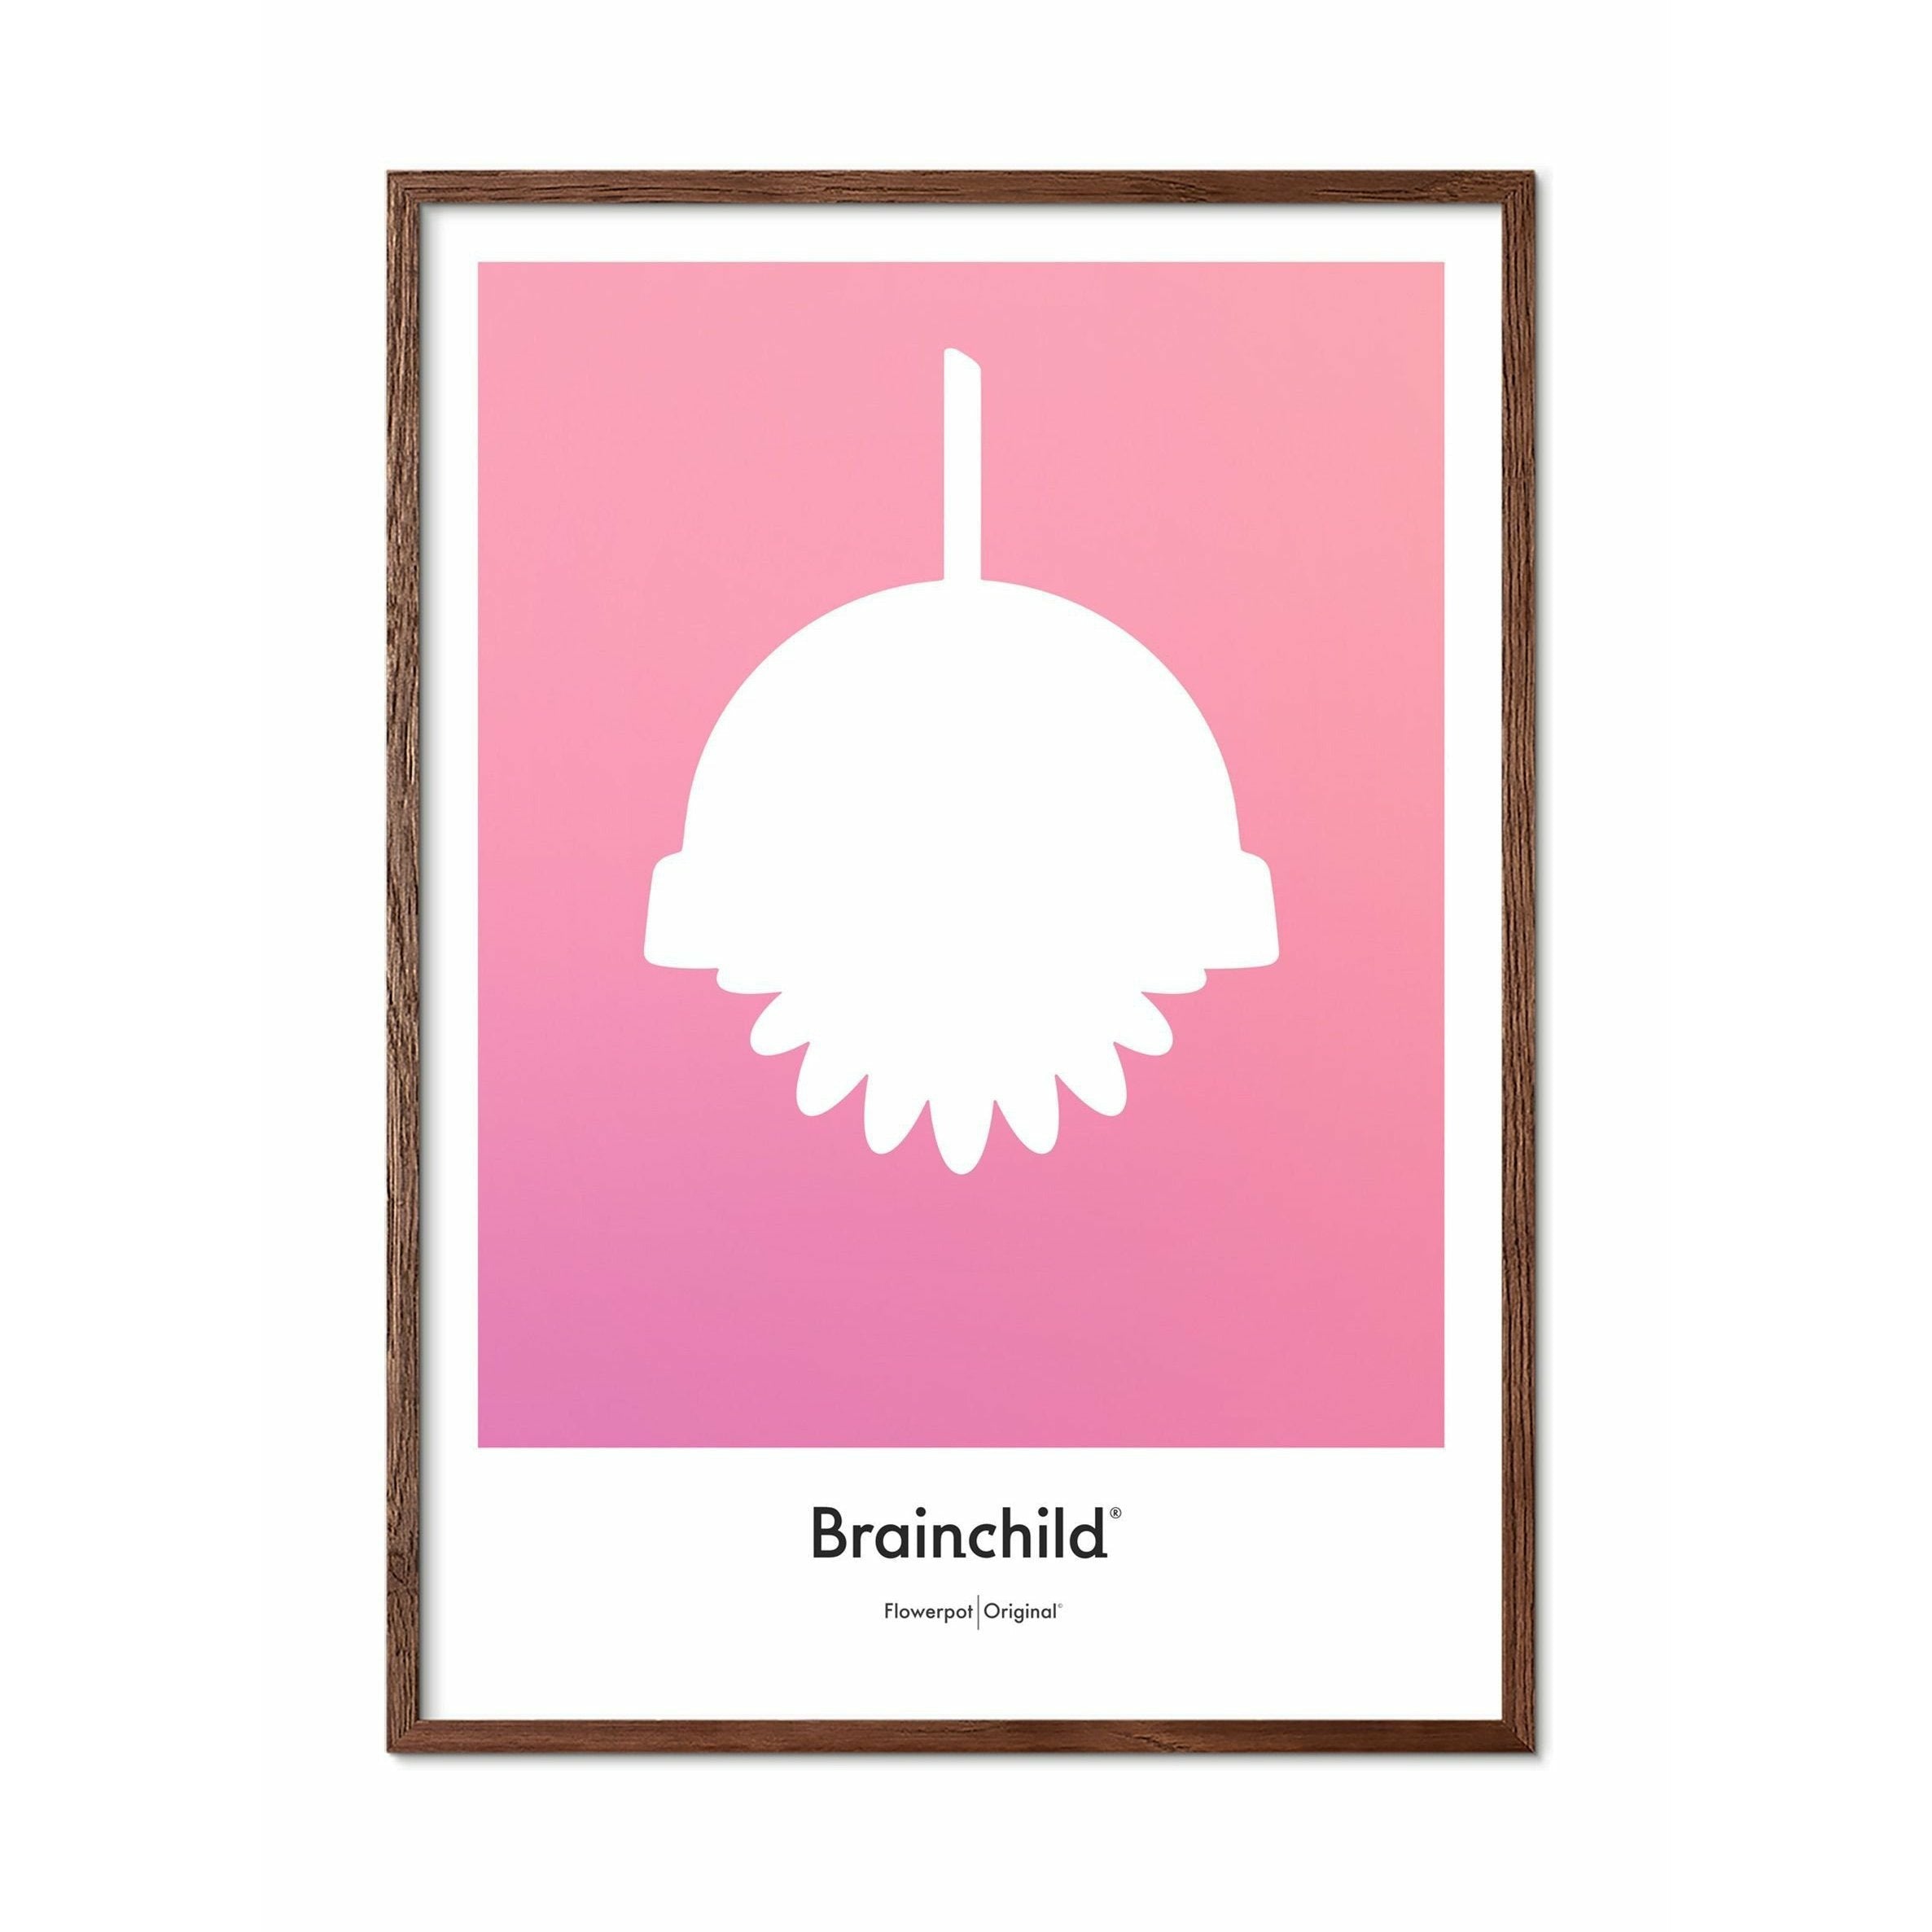 Brainchild Flowerpot Design Icon Poster, Frame Made Of Dark Wood 50x70 Cm, Pink